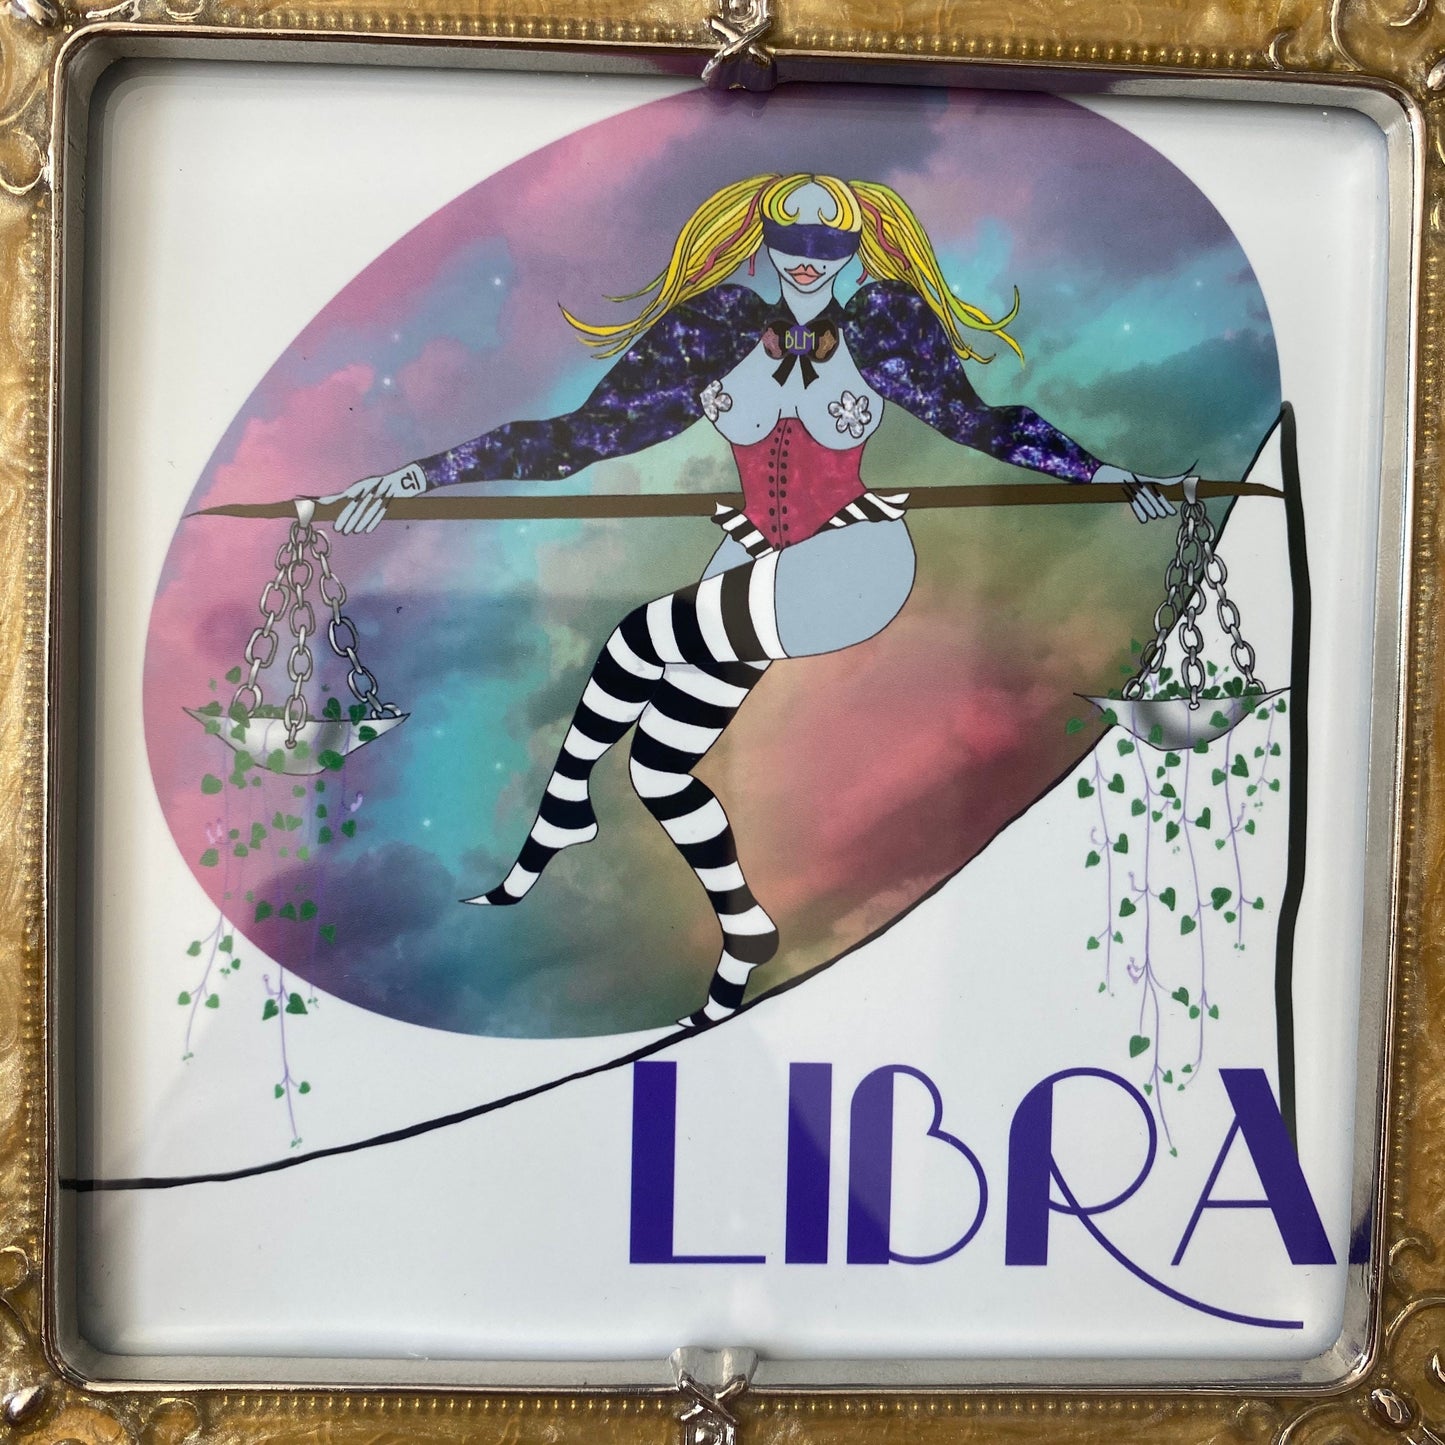 Libra framed print